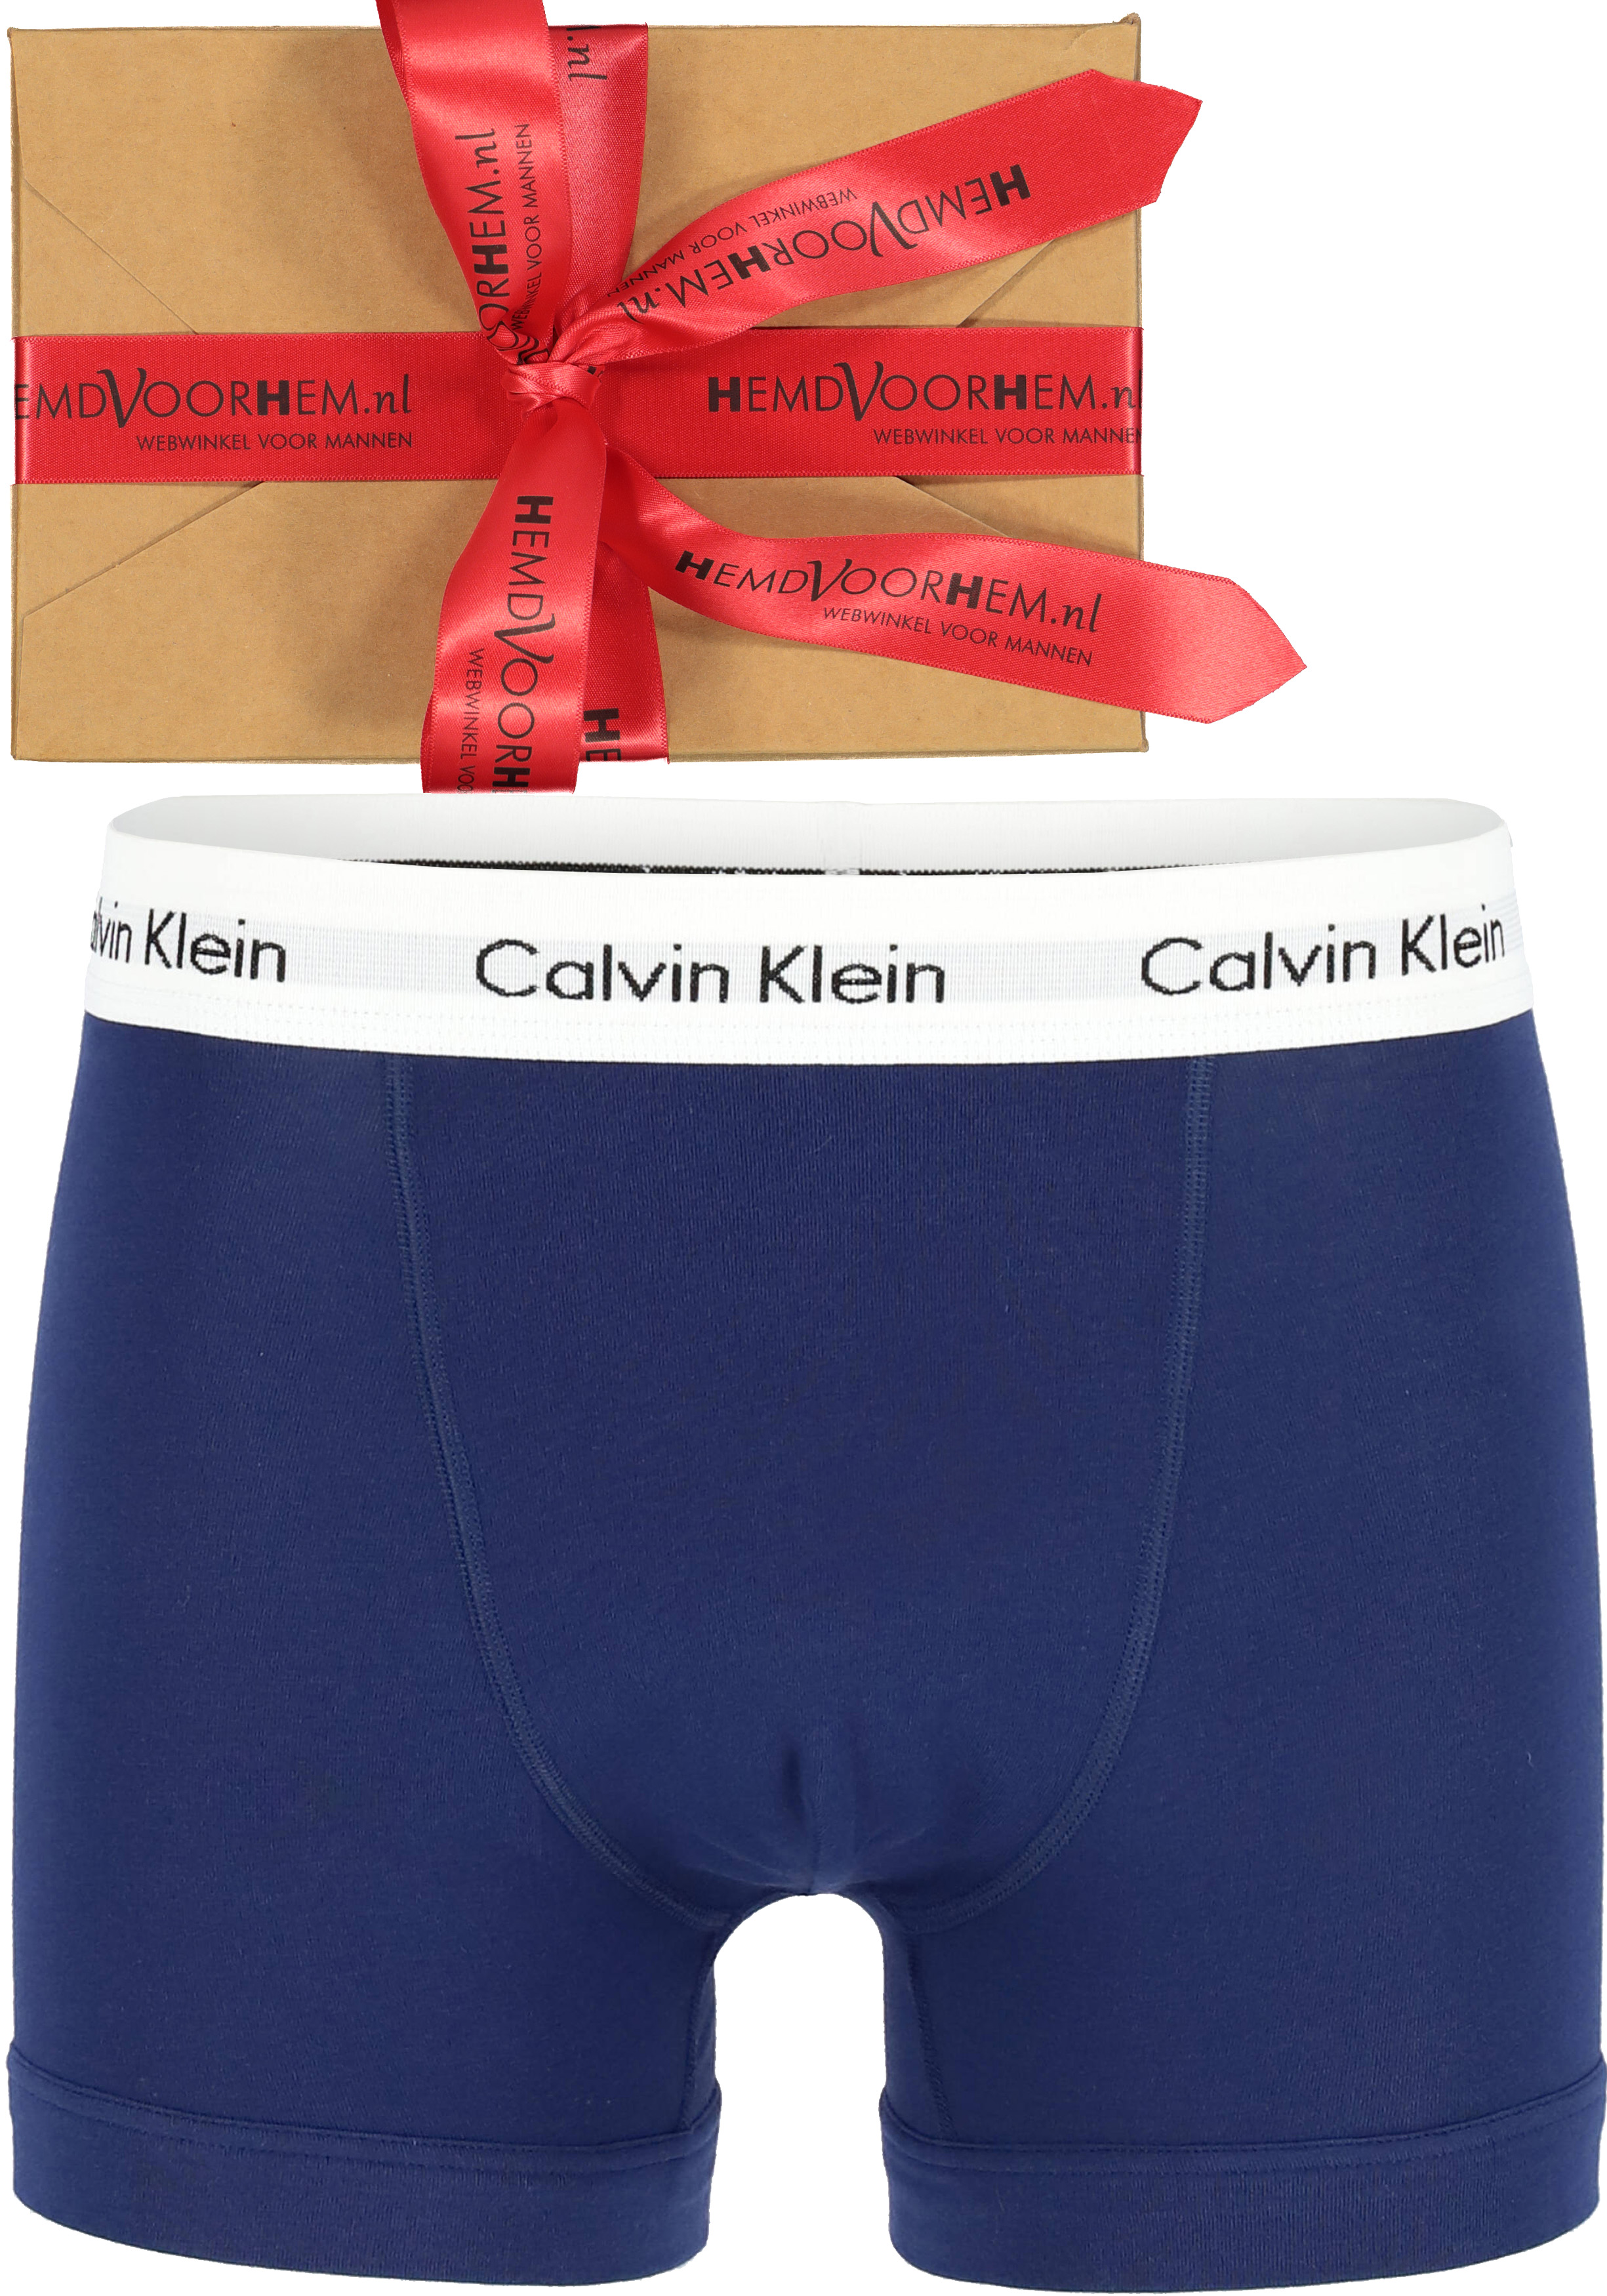 Calvin Klein Trunk blauw, in cadeauverpakking